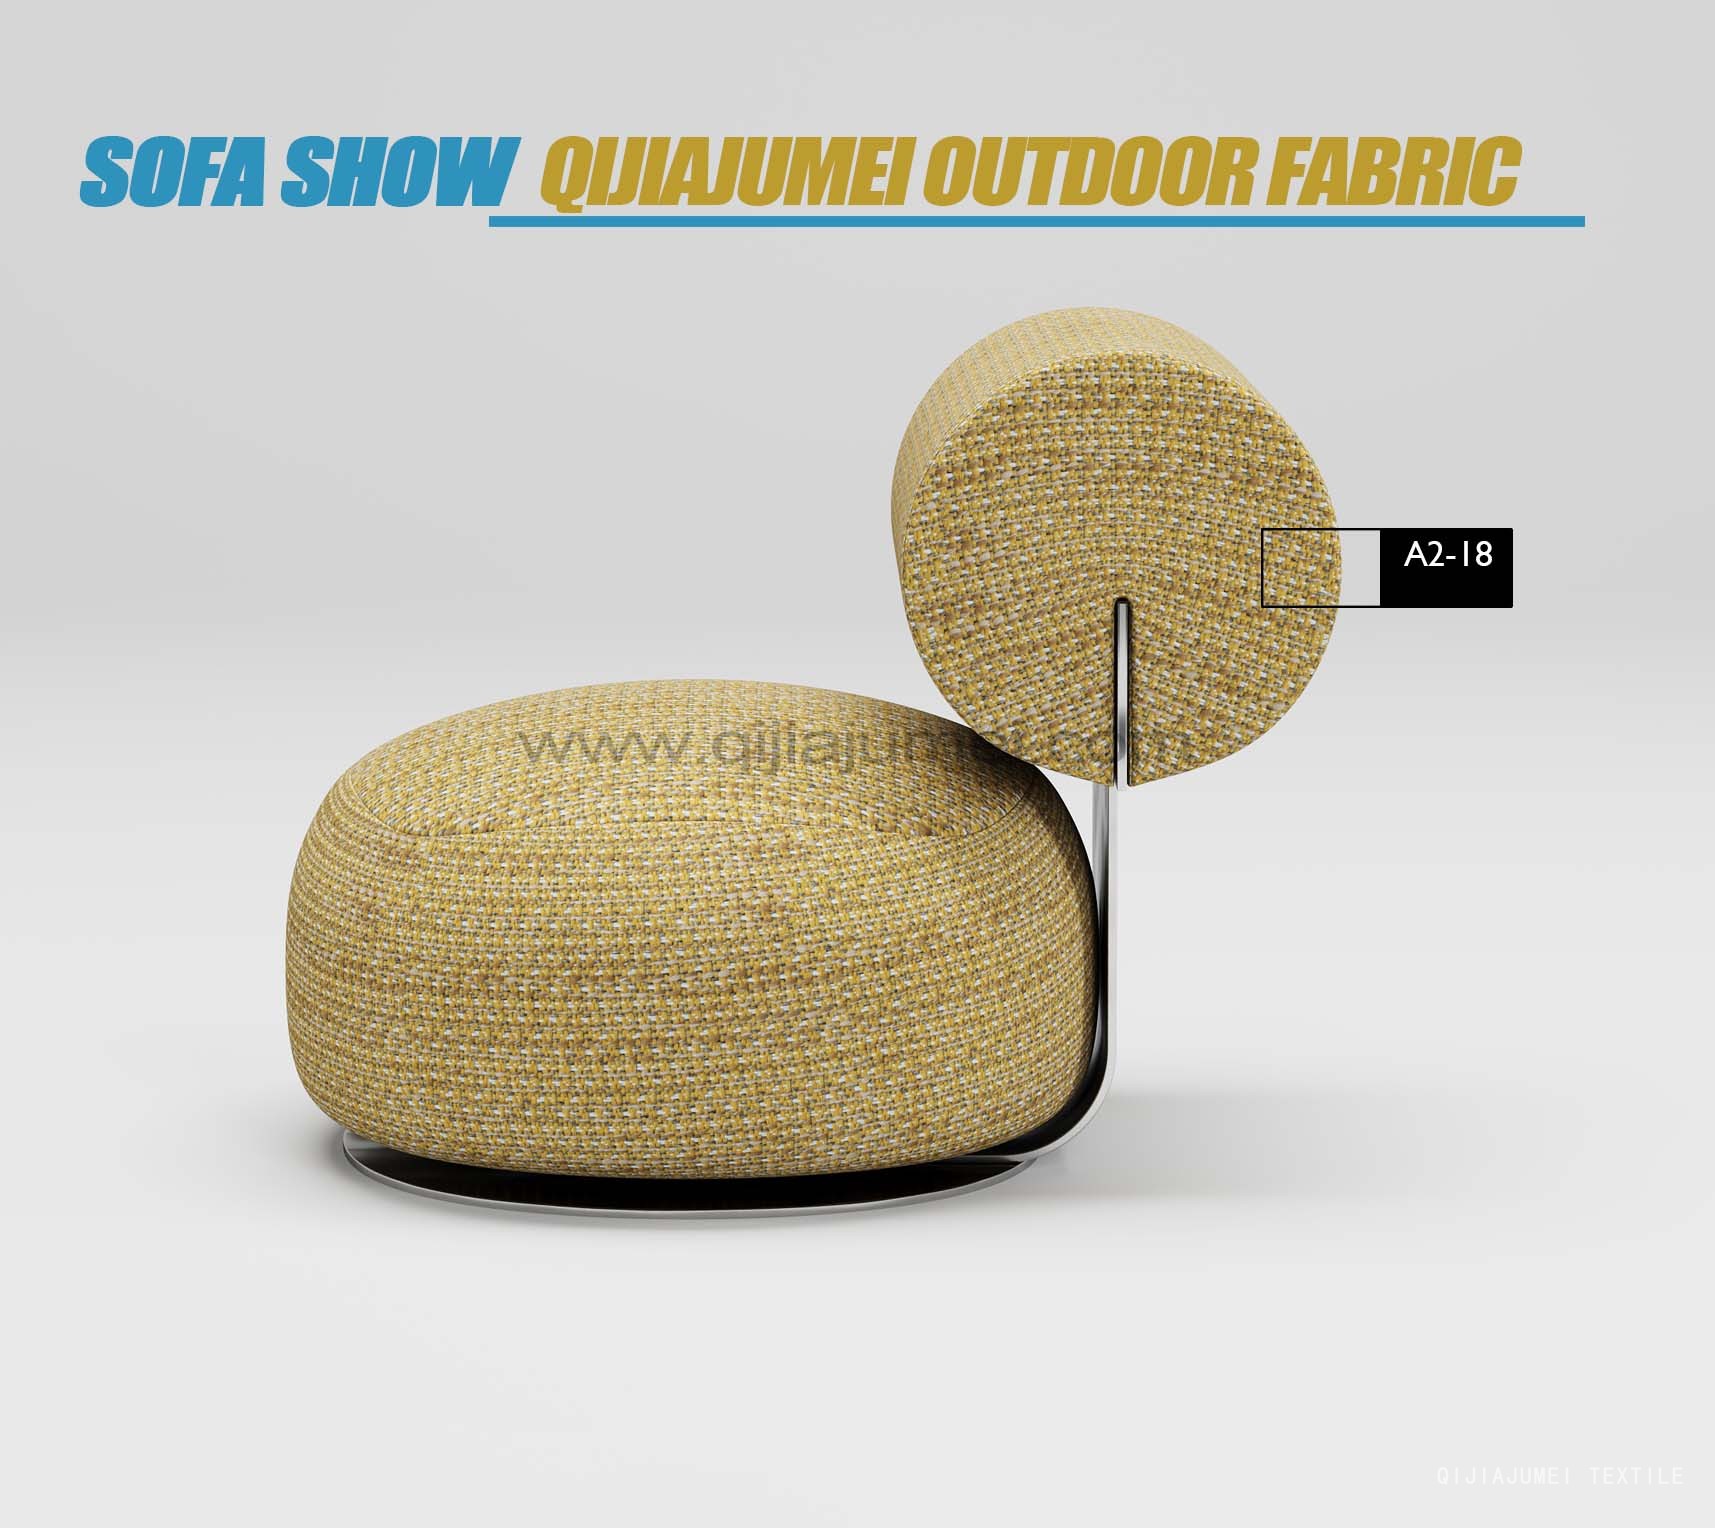 Outdoor Shade Sofa Beach Chair Pillow Fabric